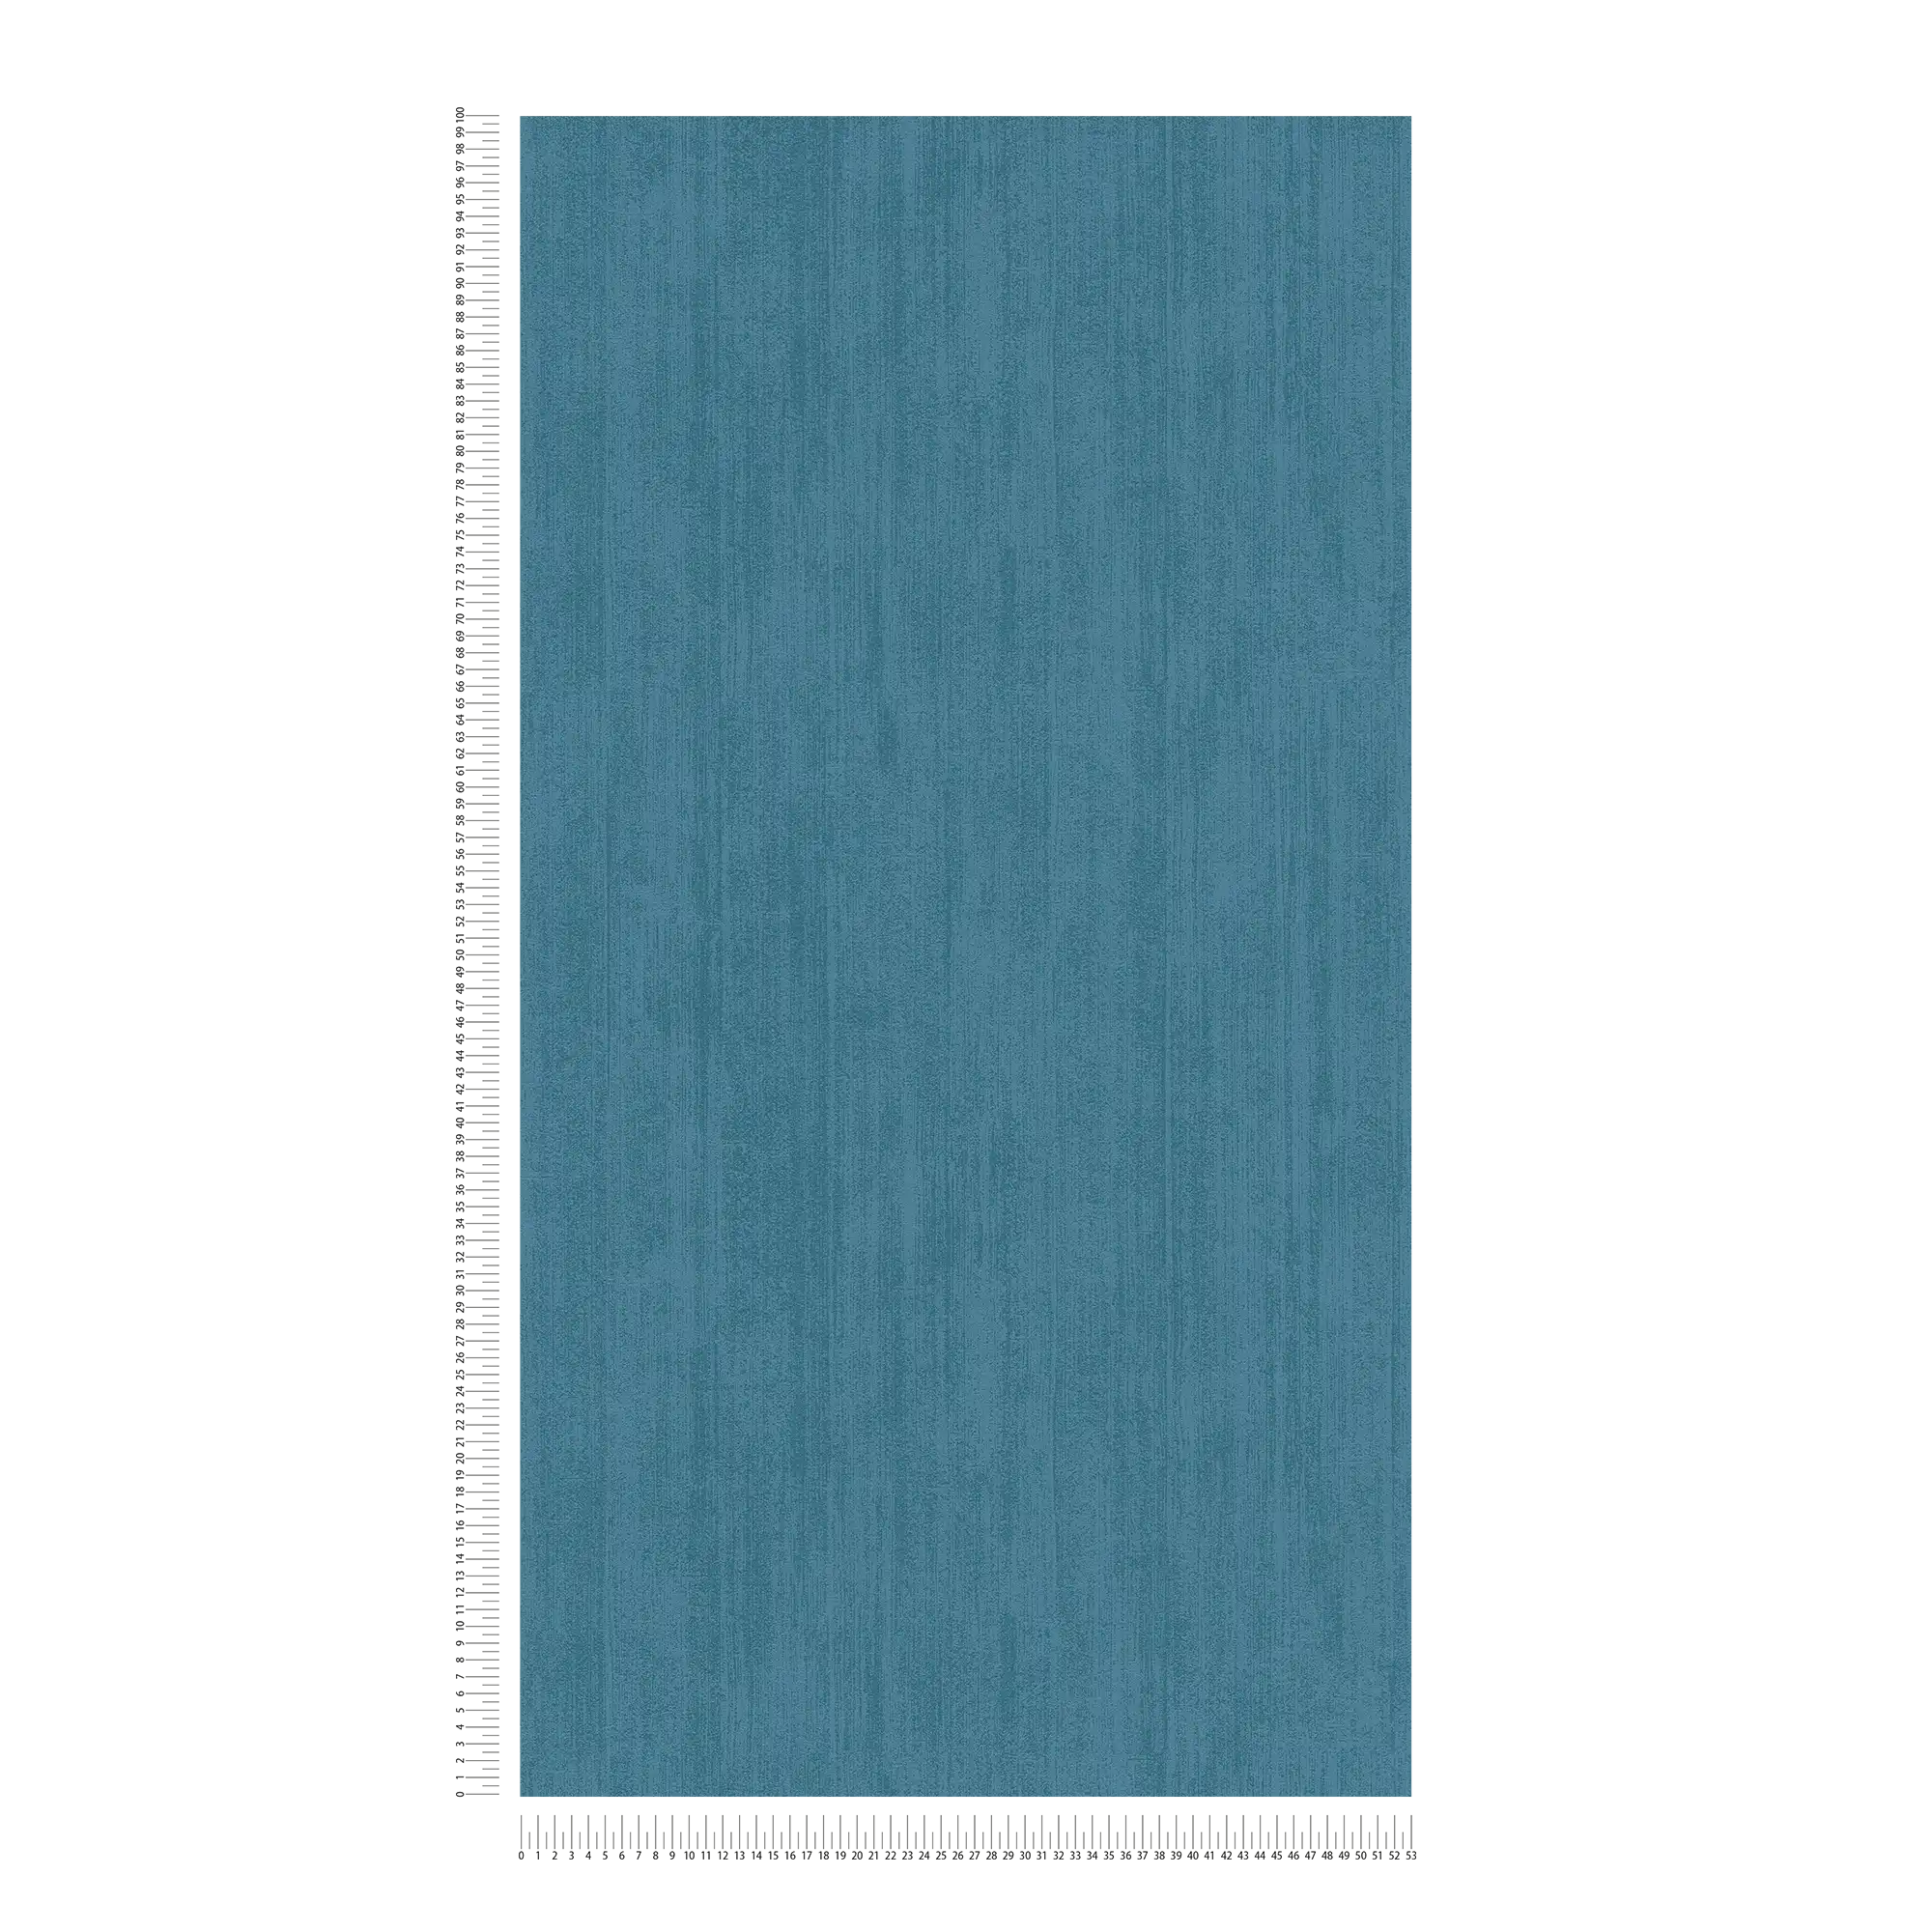             Carta da parati in tessuto non tessuto a tinta unita con tratteggio tono su tono - blu
        